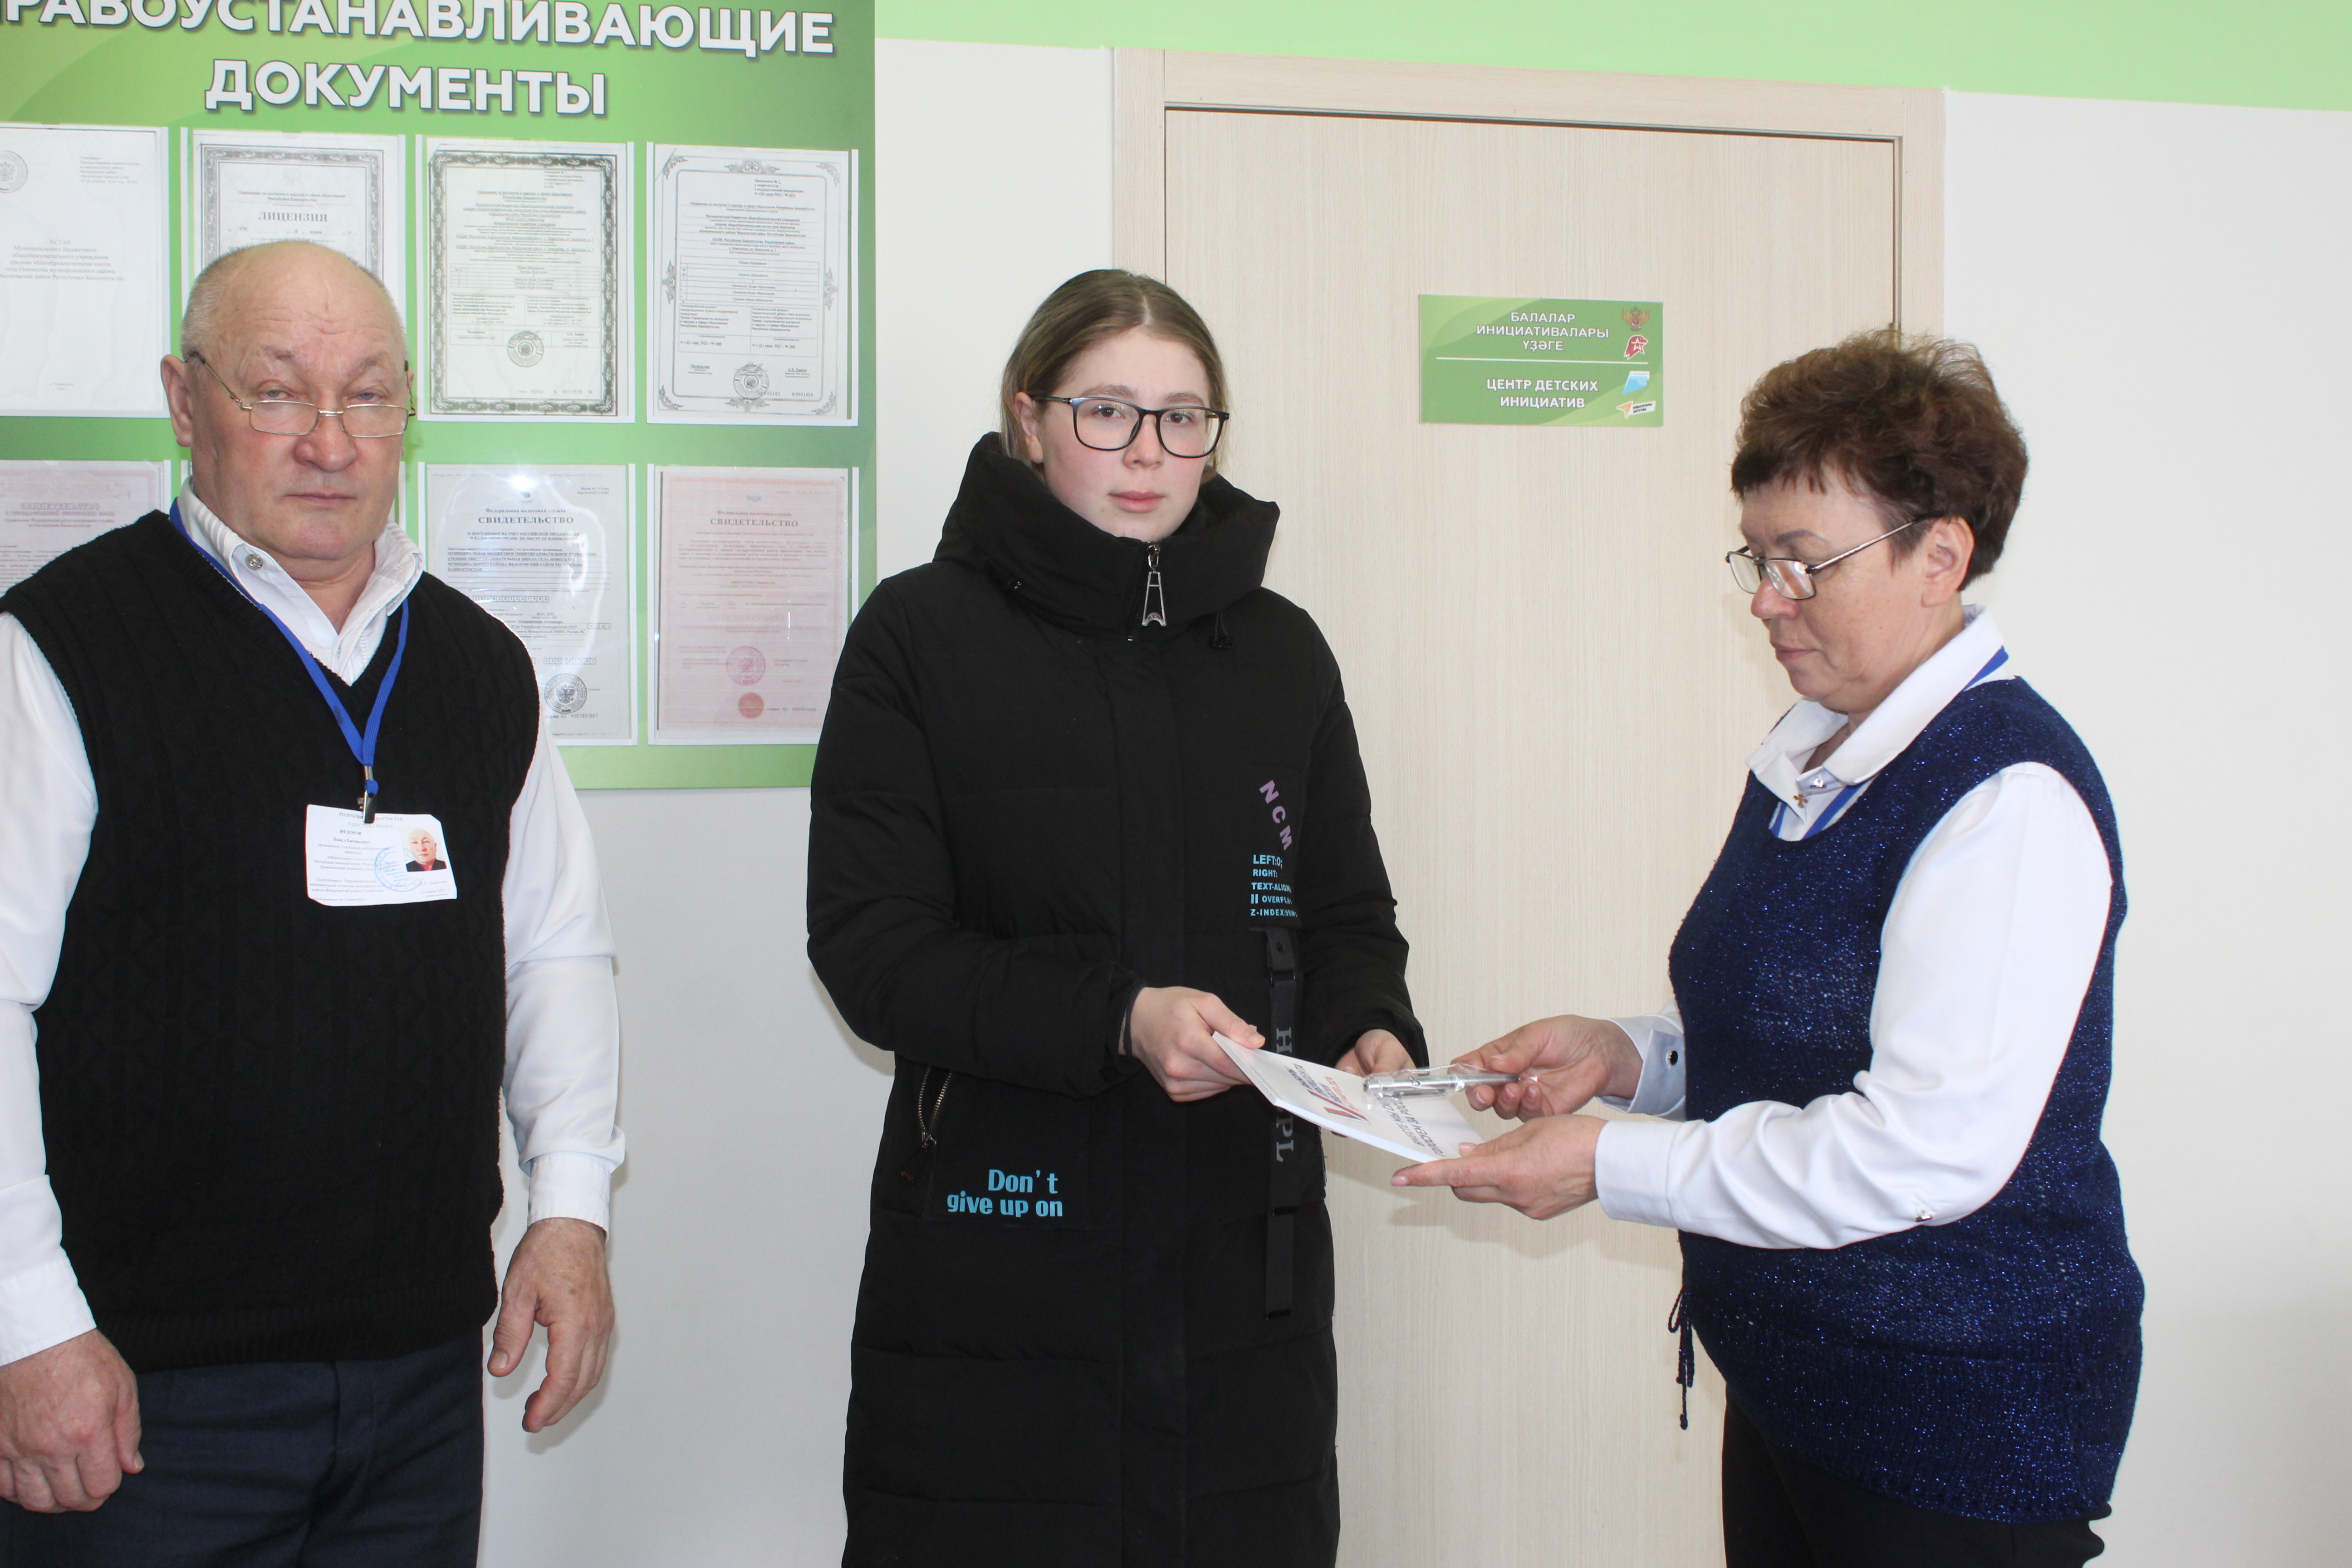 Молодая избирательница из Фёдоровского района сказала, что чувствует ответственность за будущее страны